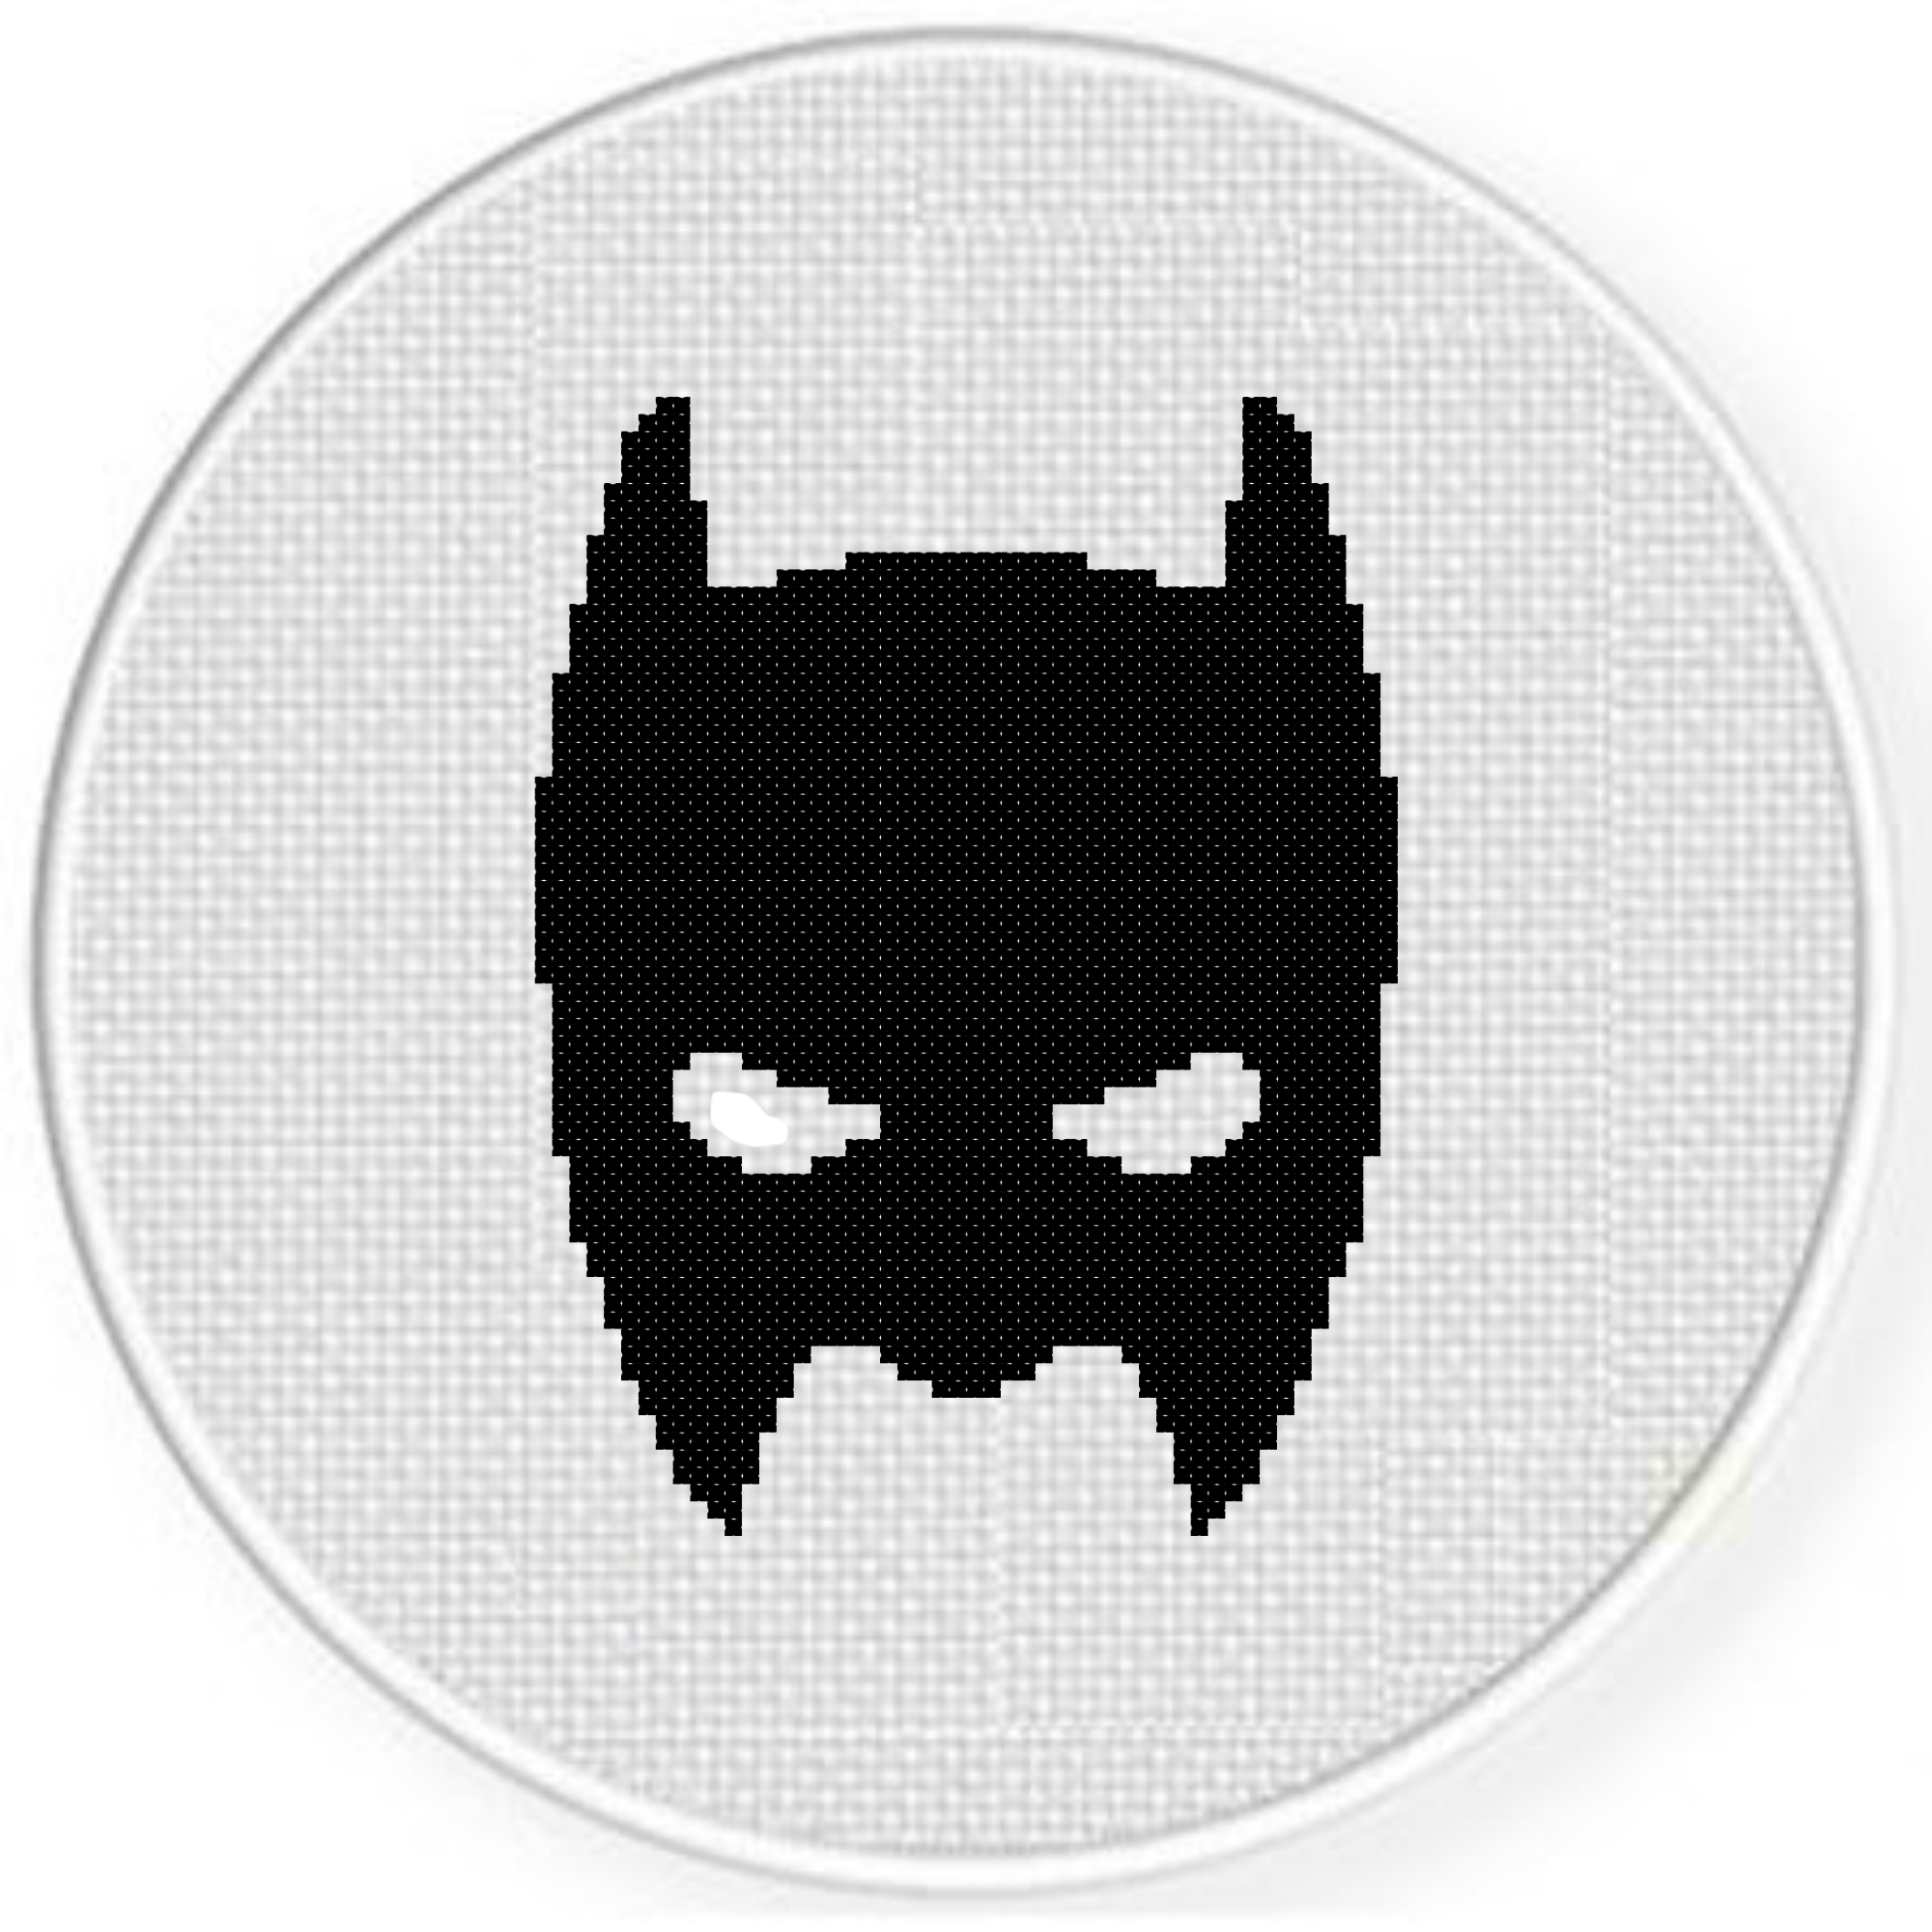 Bat Mask Cross Stitch Pattern – Daily Cross Stitch